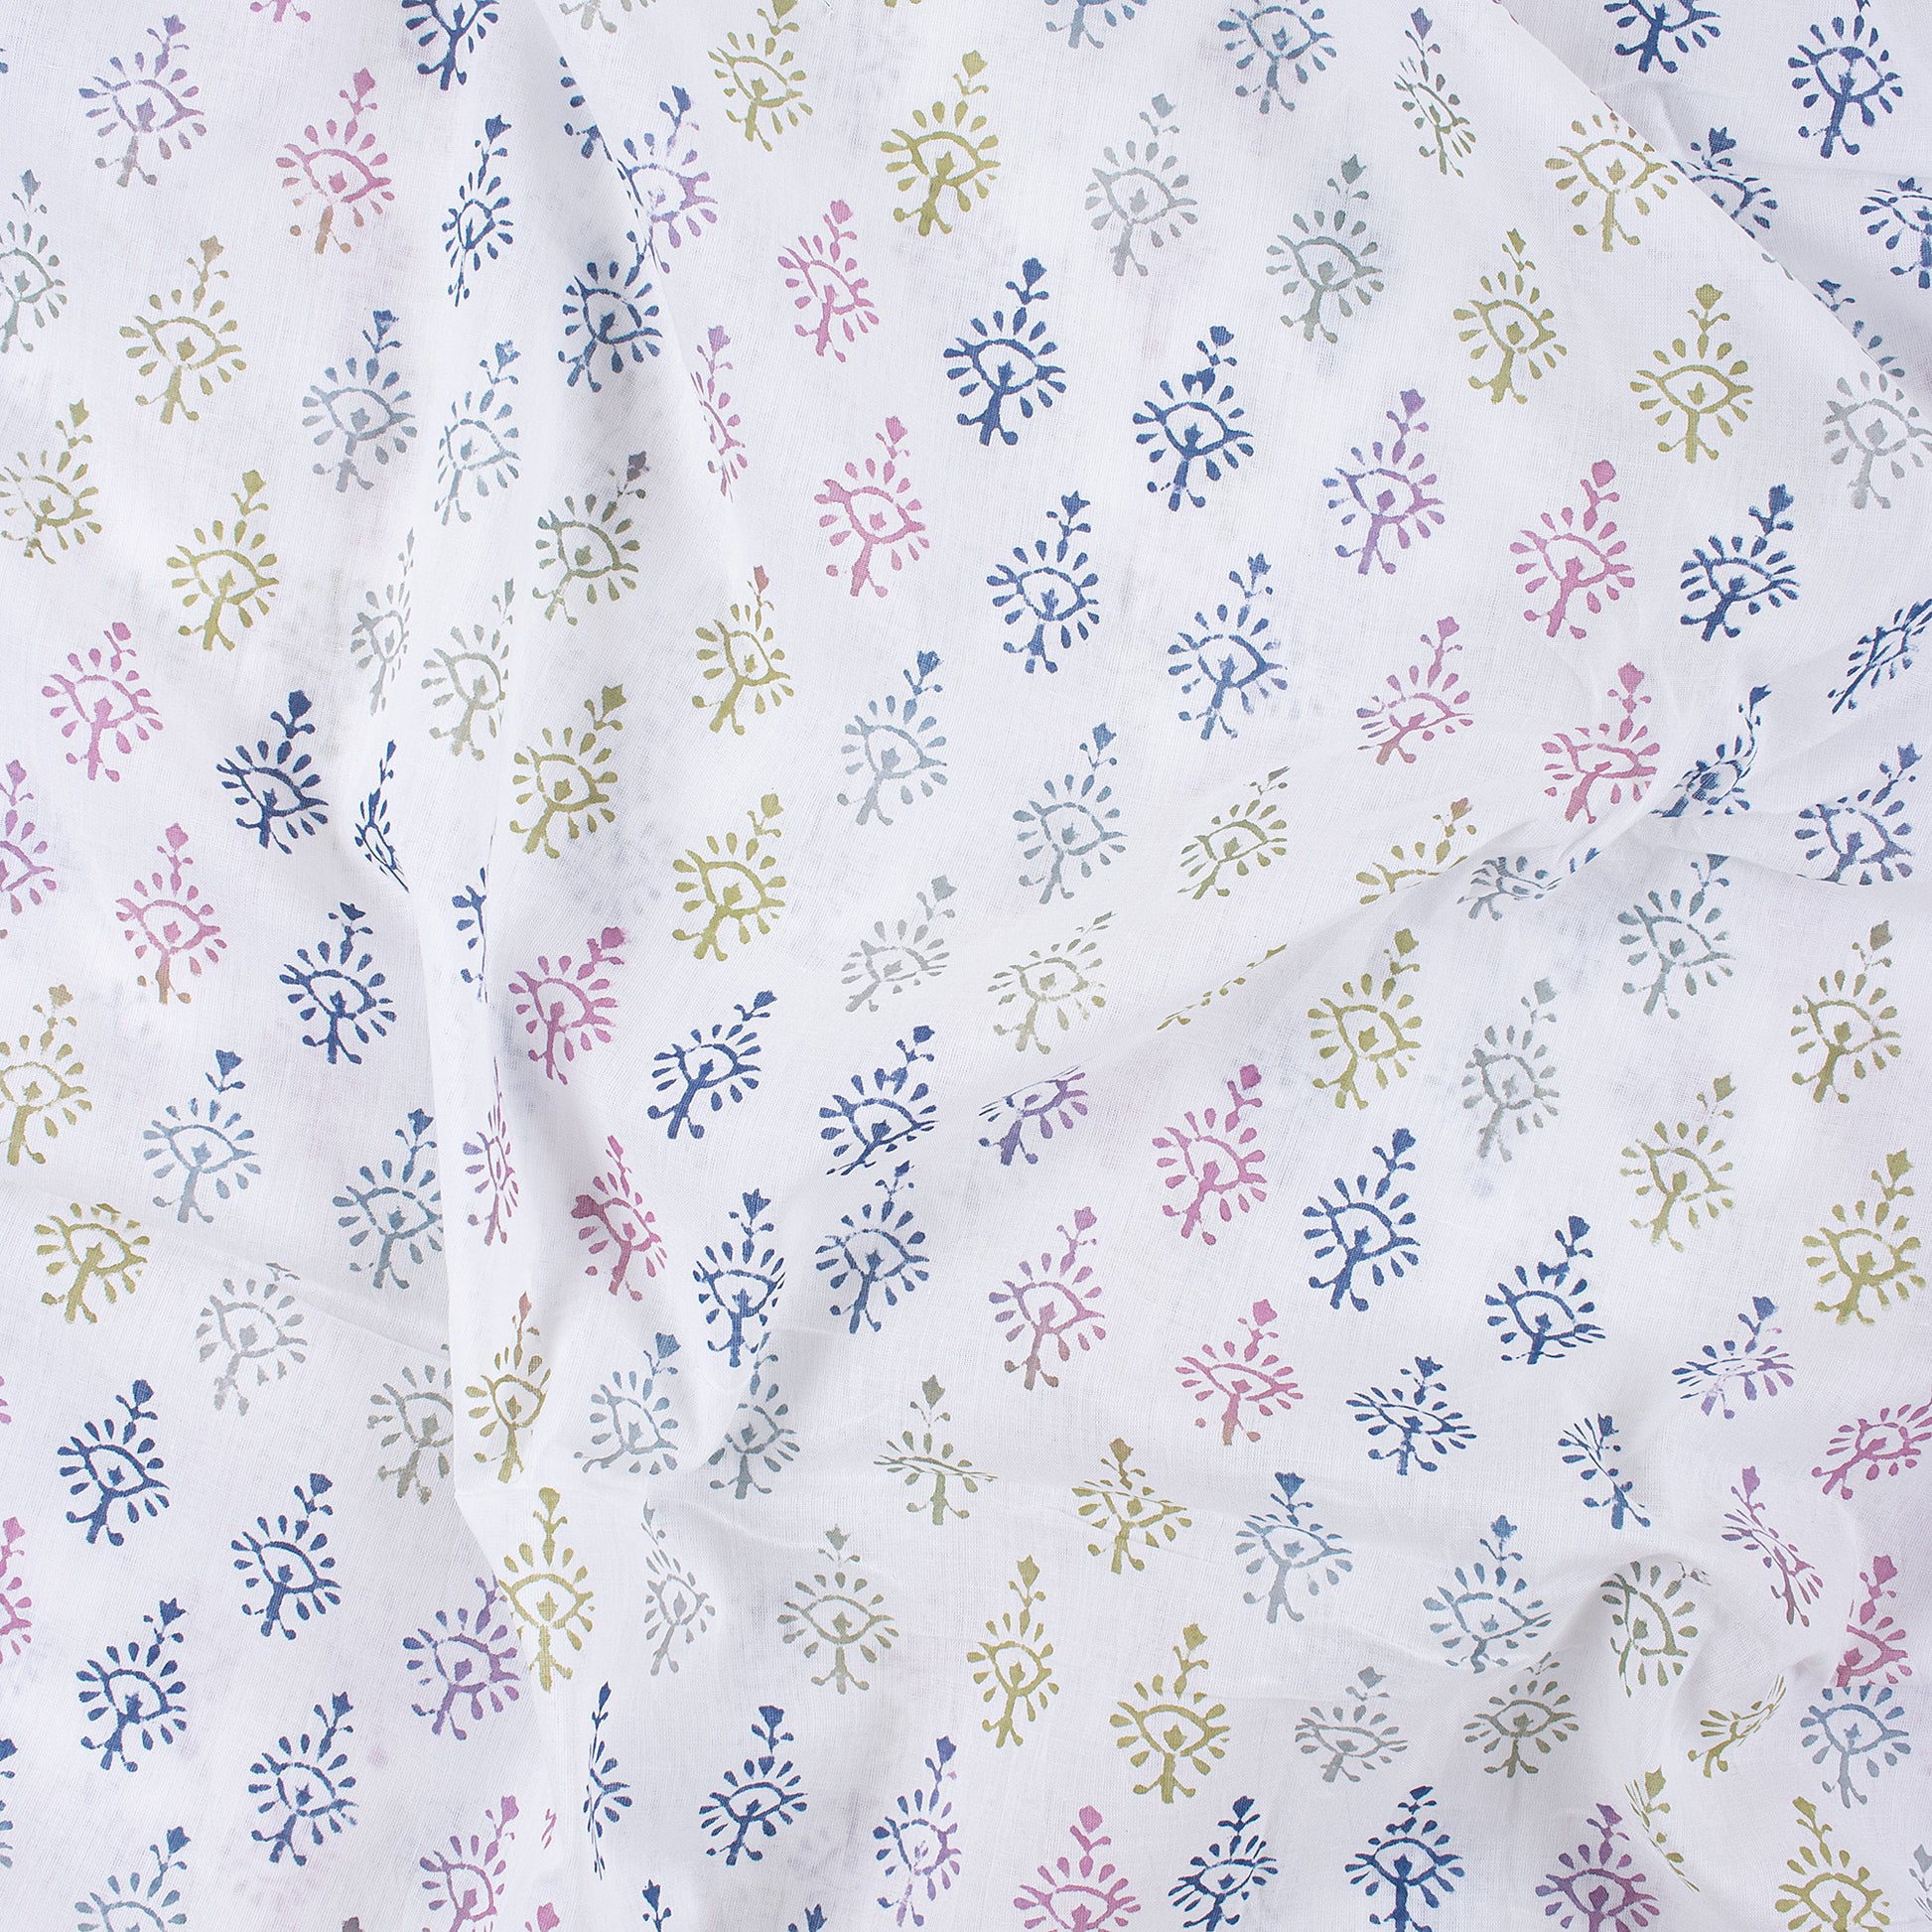 Rainbow Print Organic Cotton Fabric